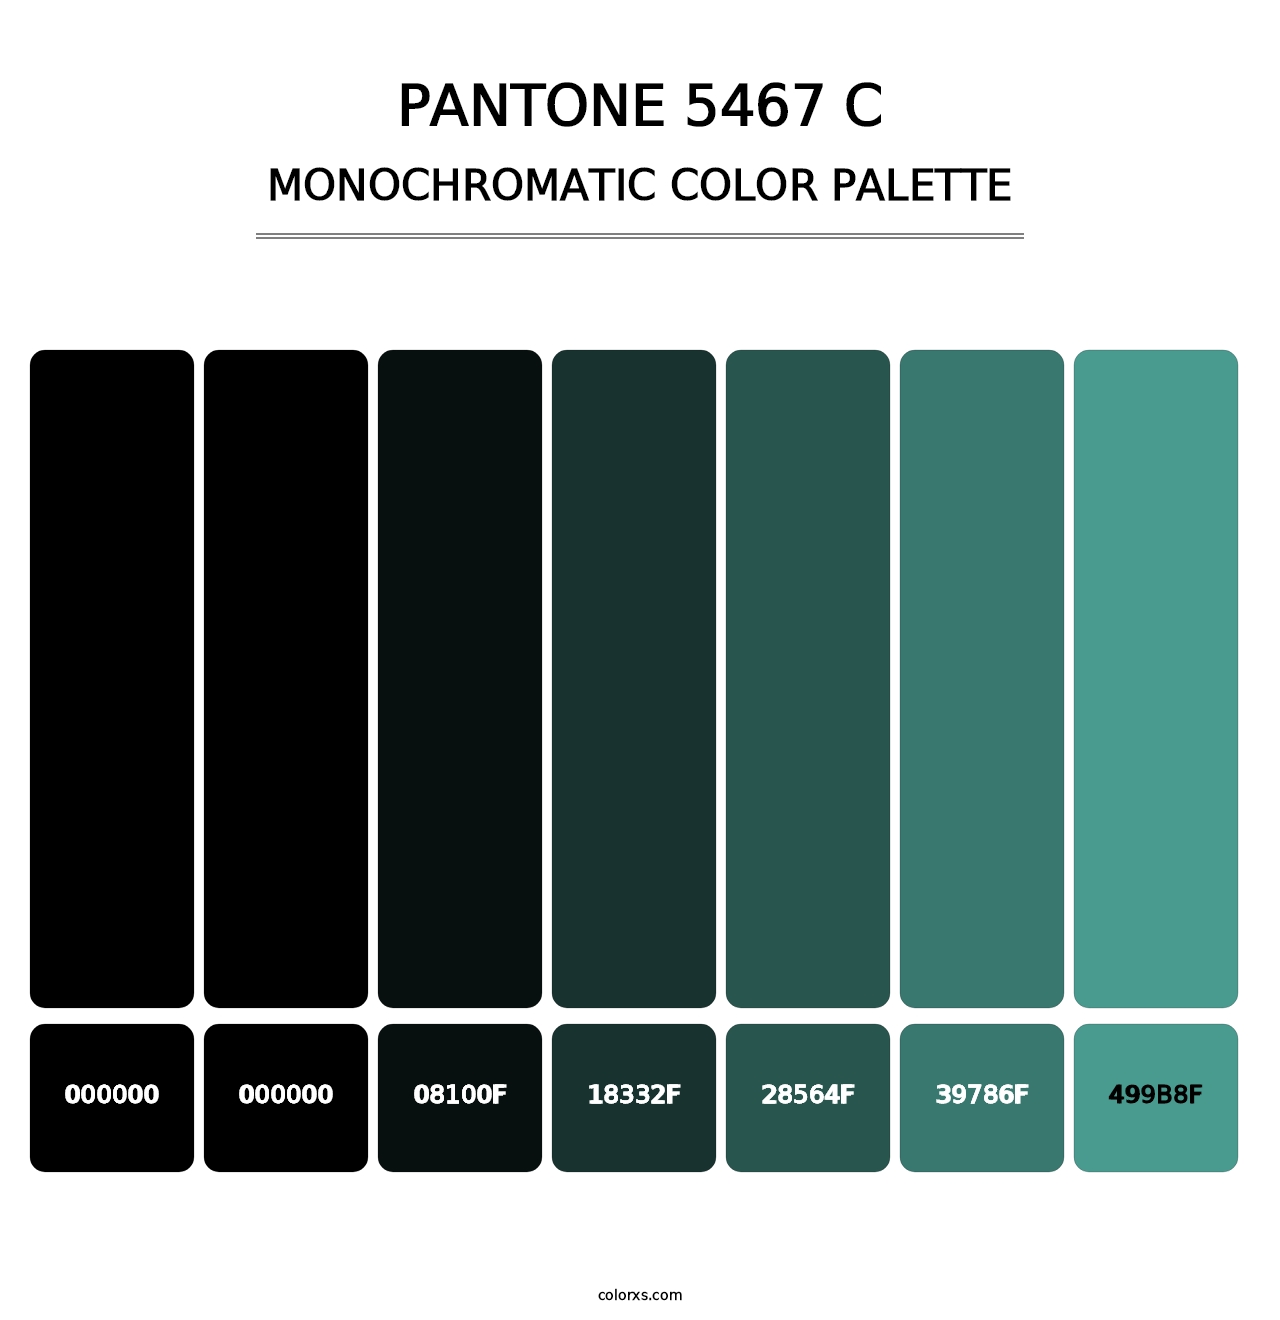 PANTONE 5467 C - Monochromatic Color Palette